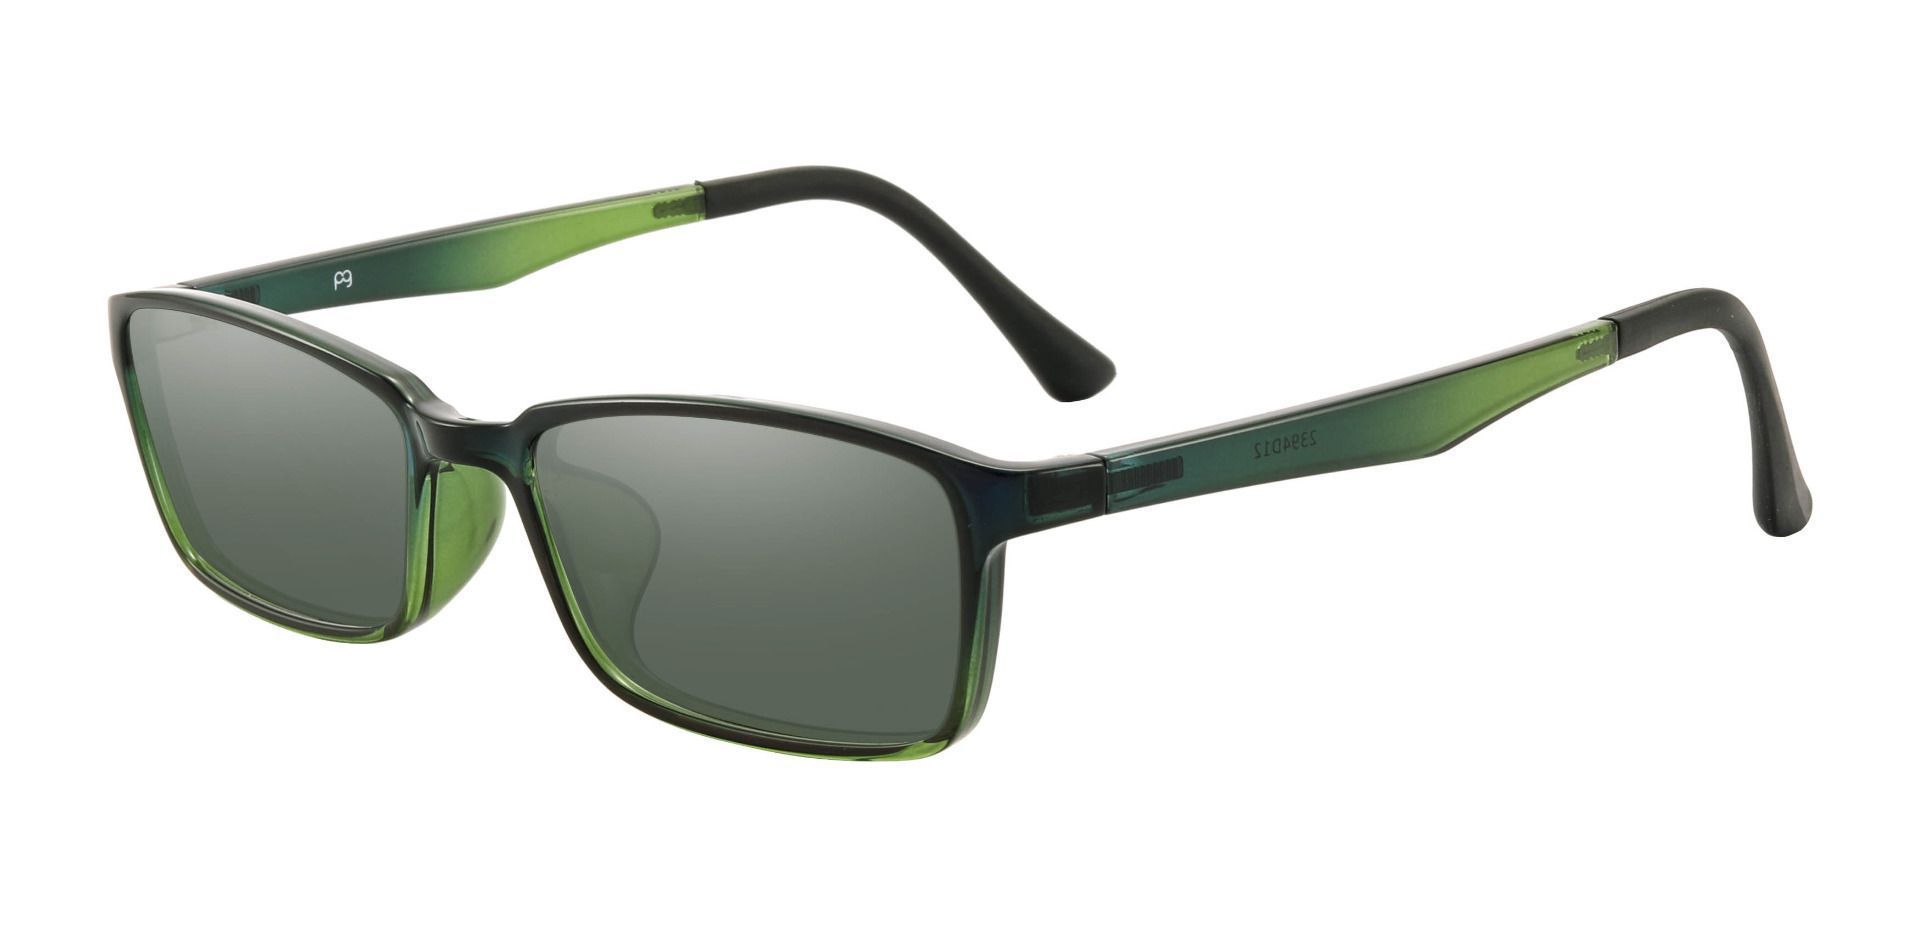 San Dimas Rectangle Prescription Sunglasses - Green Frame With Green Lenses